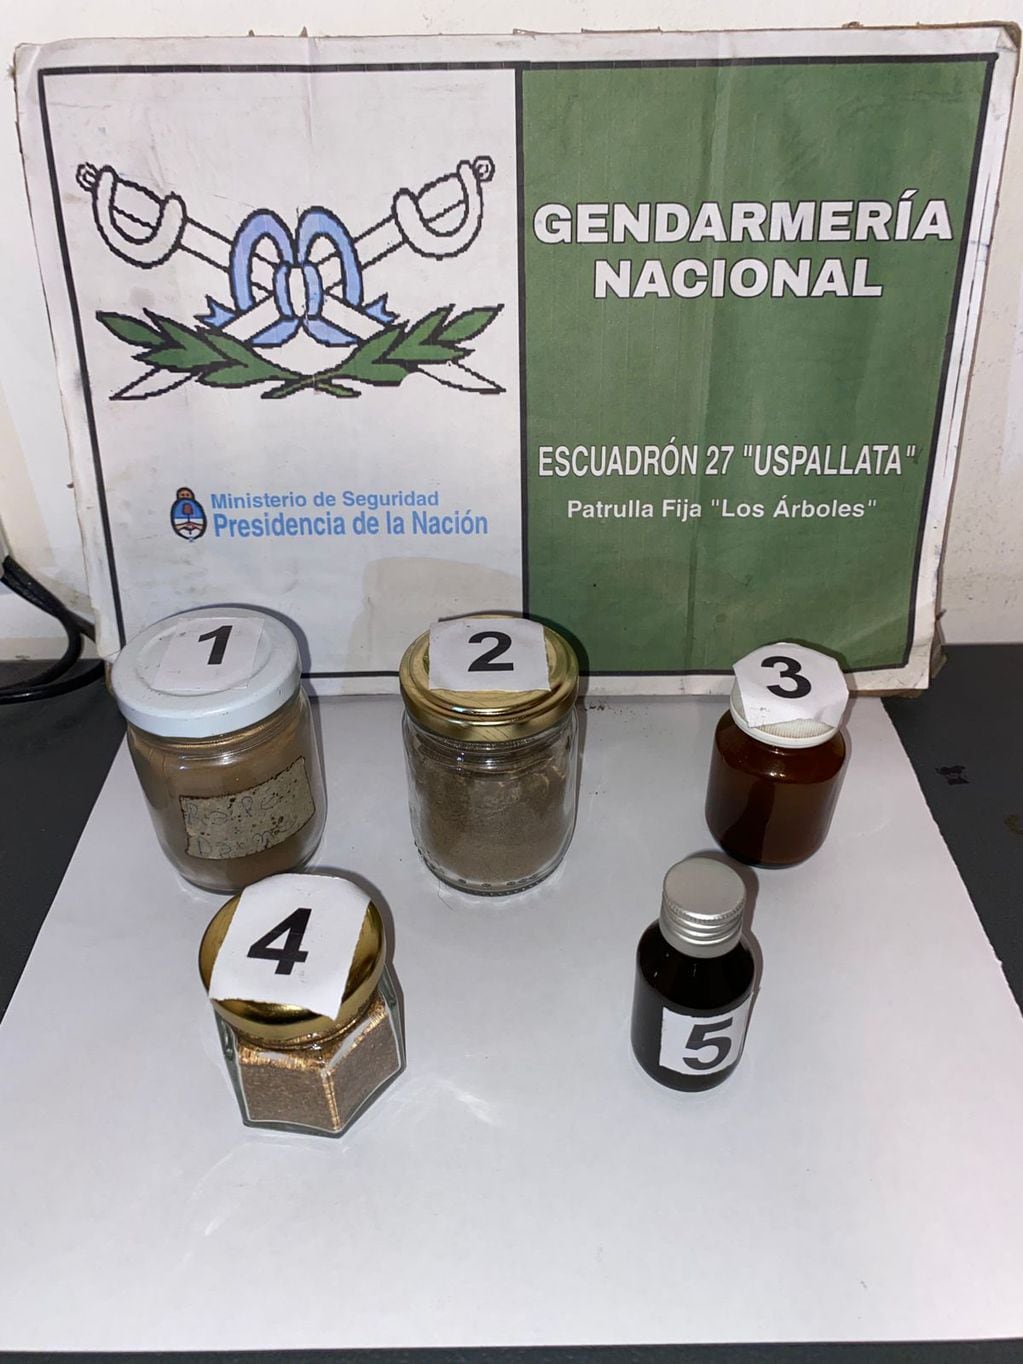 La inusual droga encontrada en Uspallata. Gentileza Gendarmería Nacional.